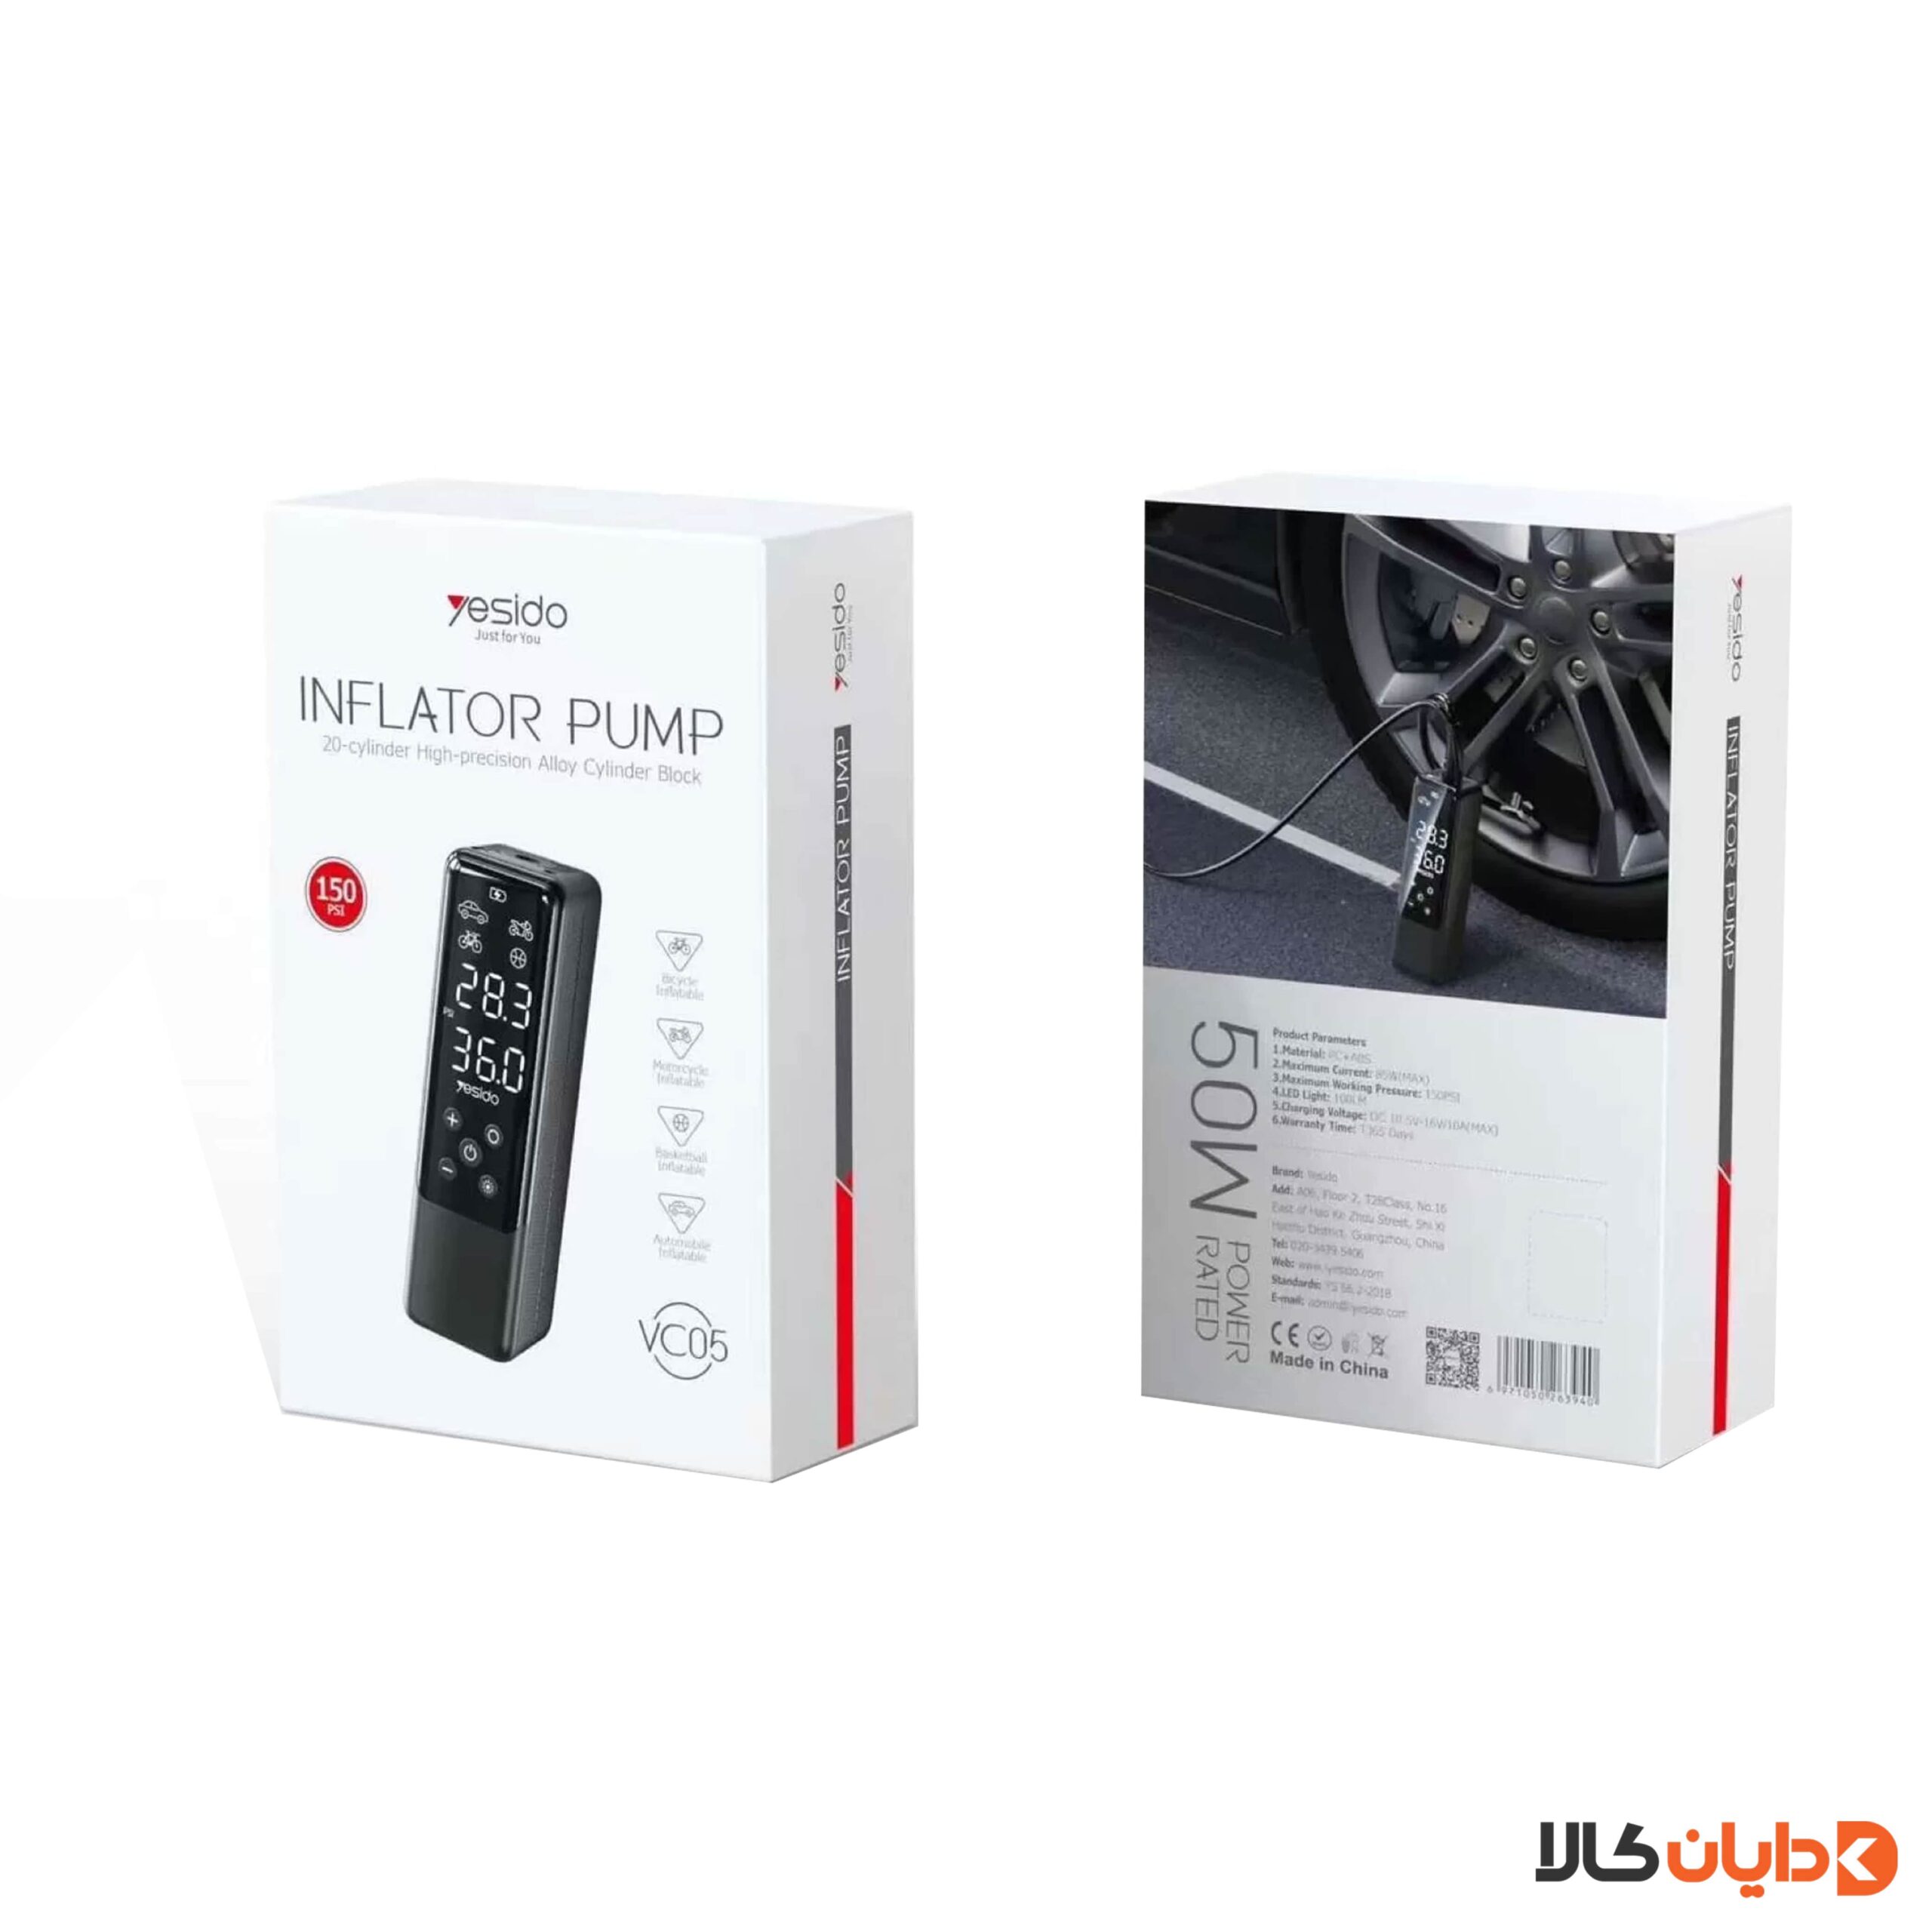 خرید پمپ باد یسیدو YESIDO مدل VC05 از دایان کالا با بهترین قیمت